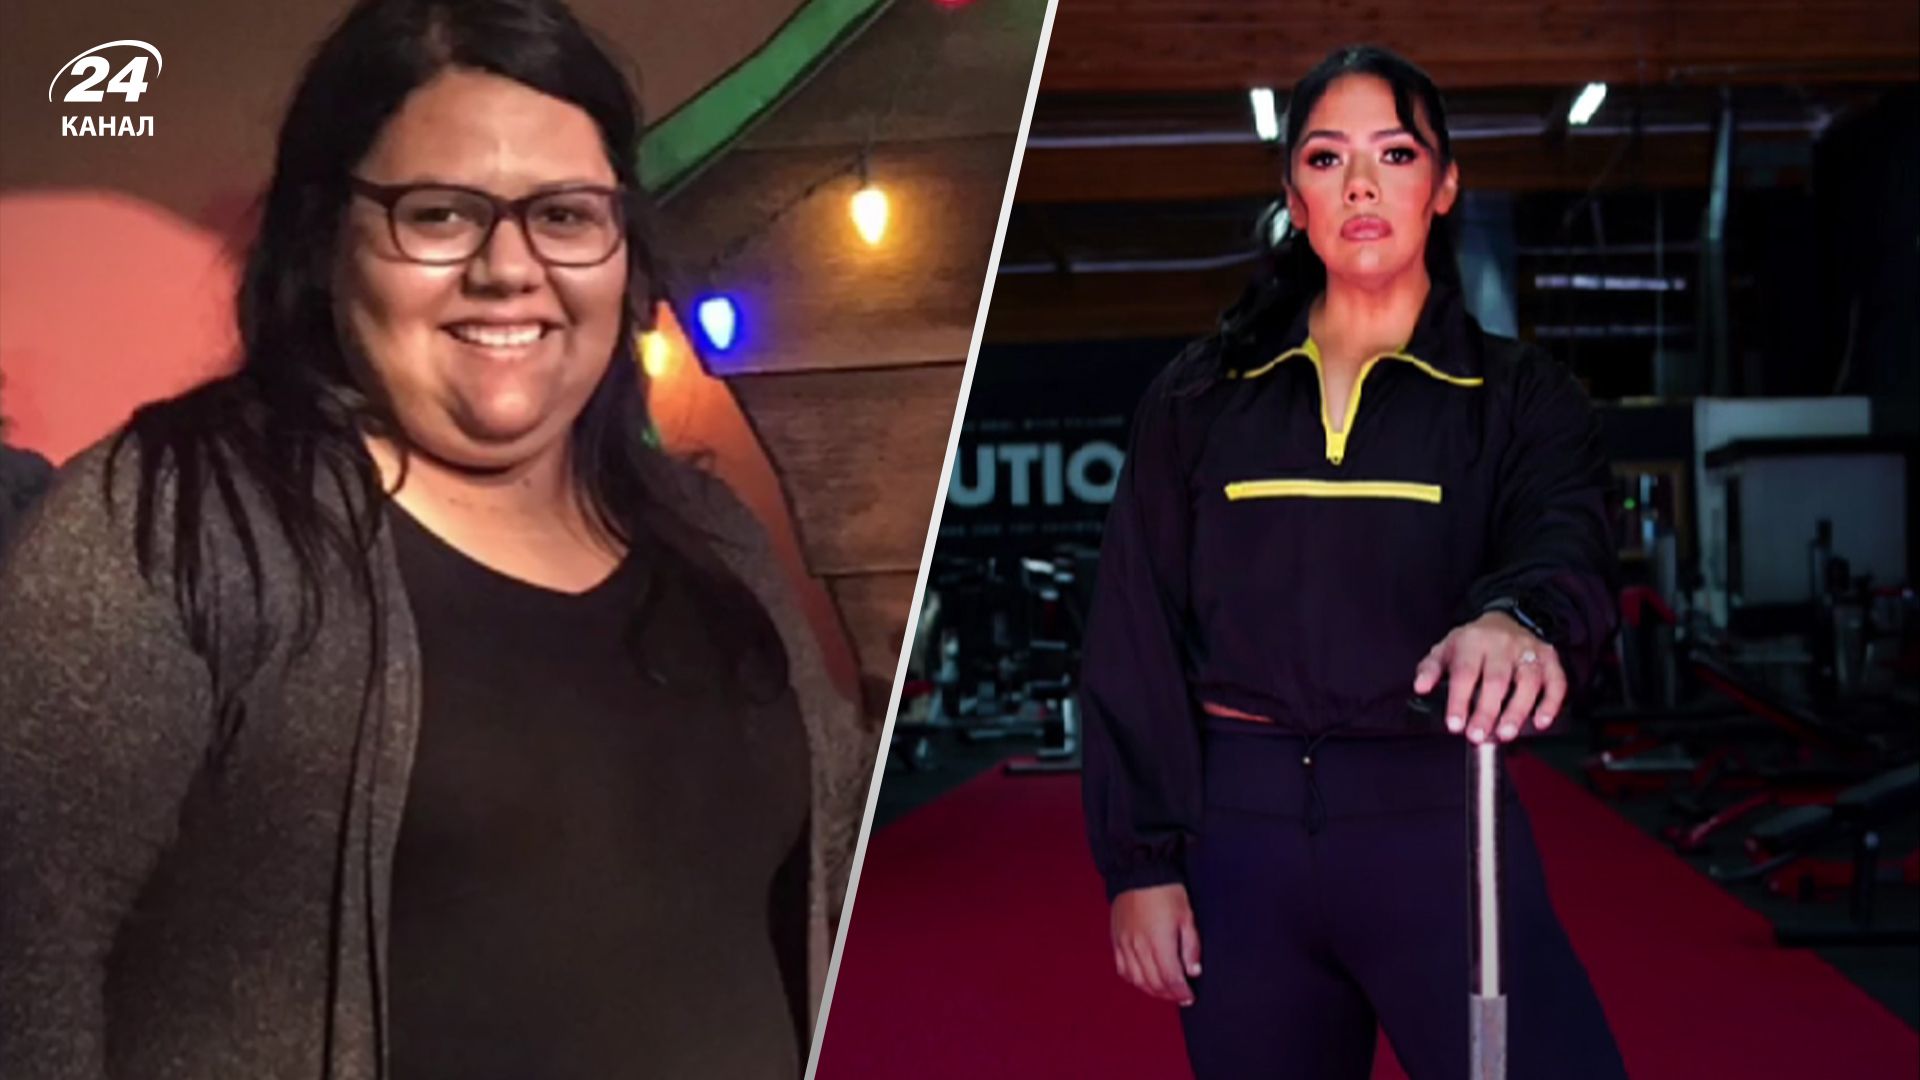 Джози похудела на 68 килограммов благодаря спорту и питанию